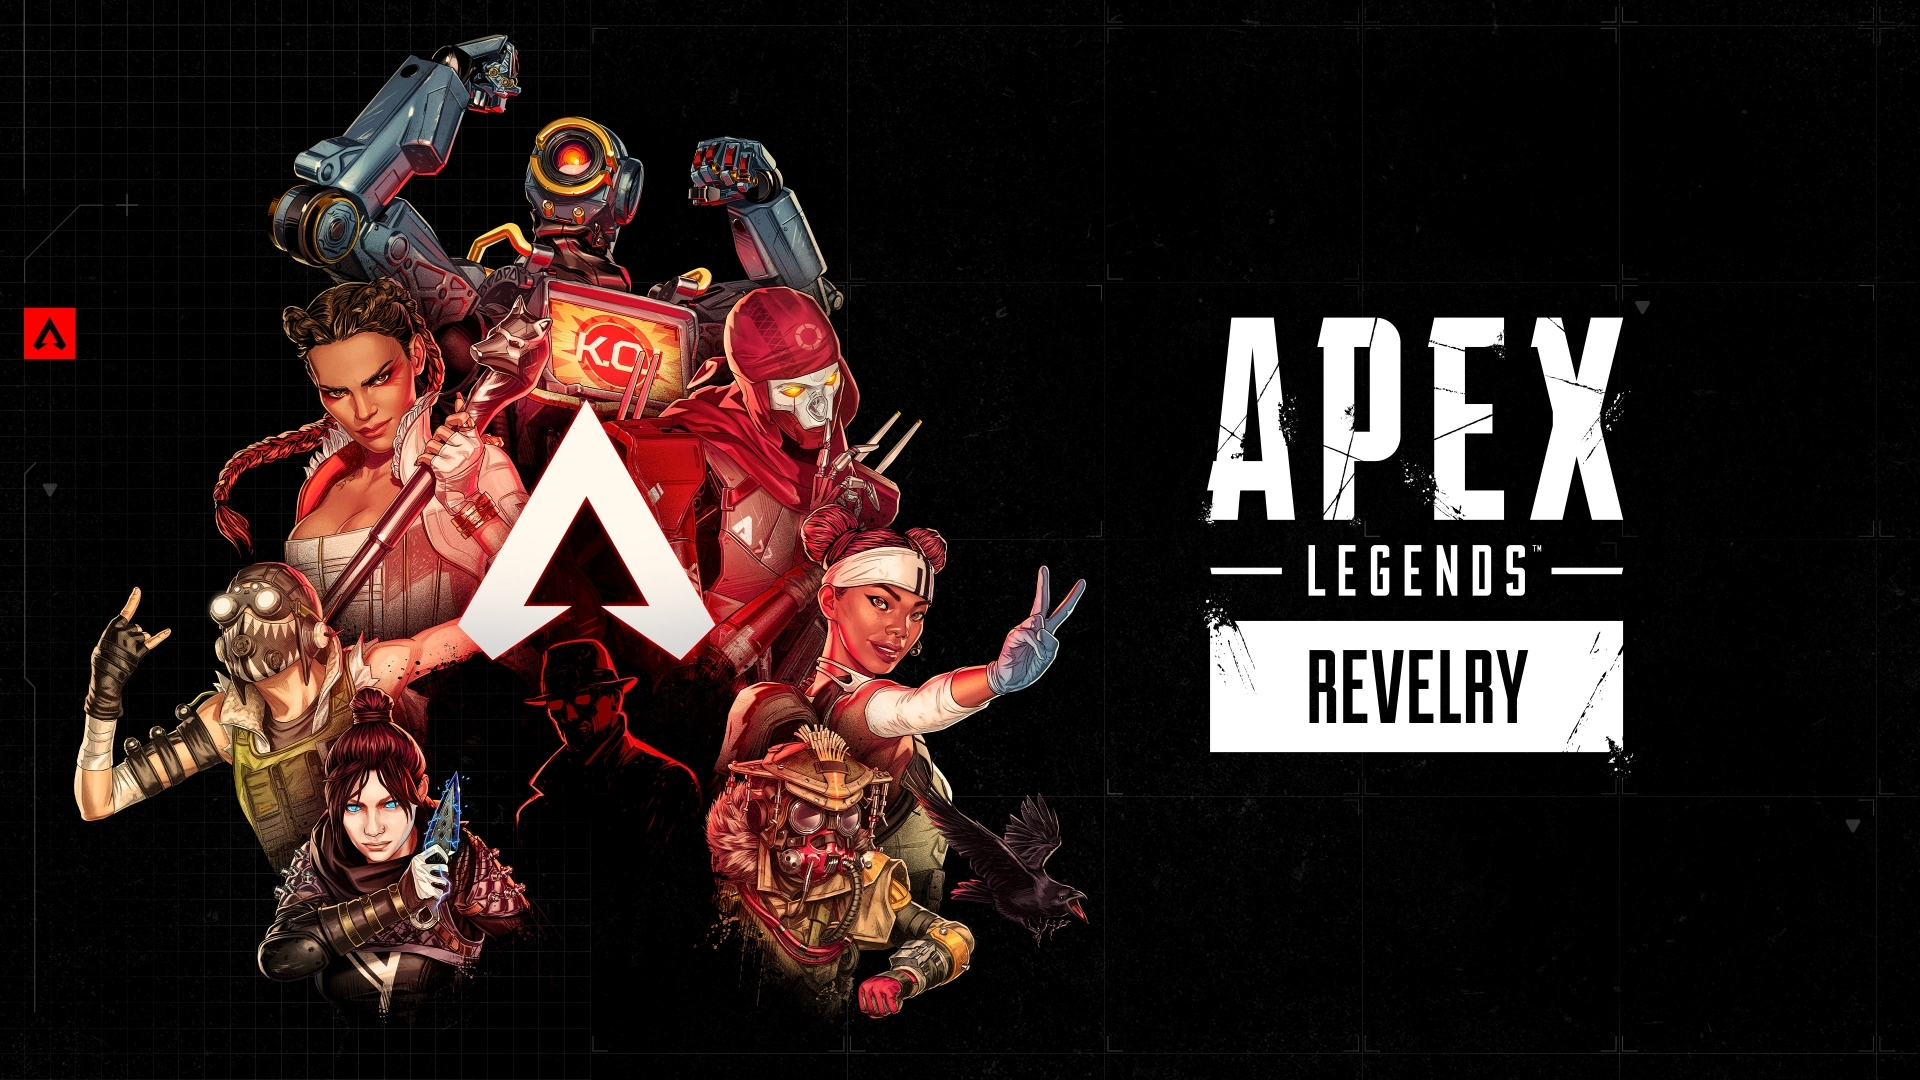 《Apex 英雄》新赛季「狂欢」内容抢先看 电玩疯释出实机游玩影片插图